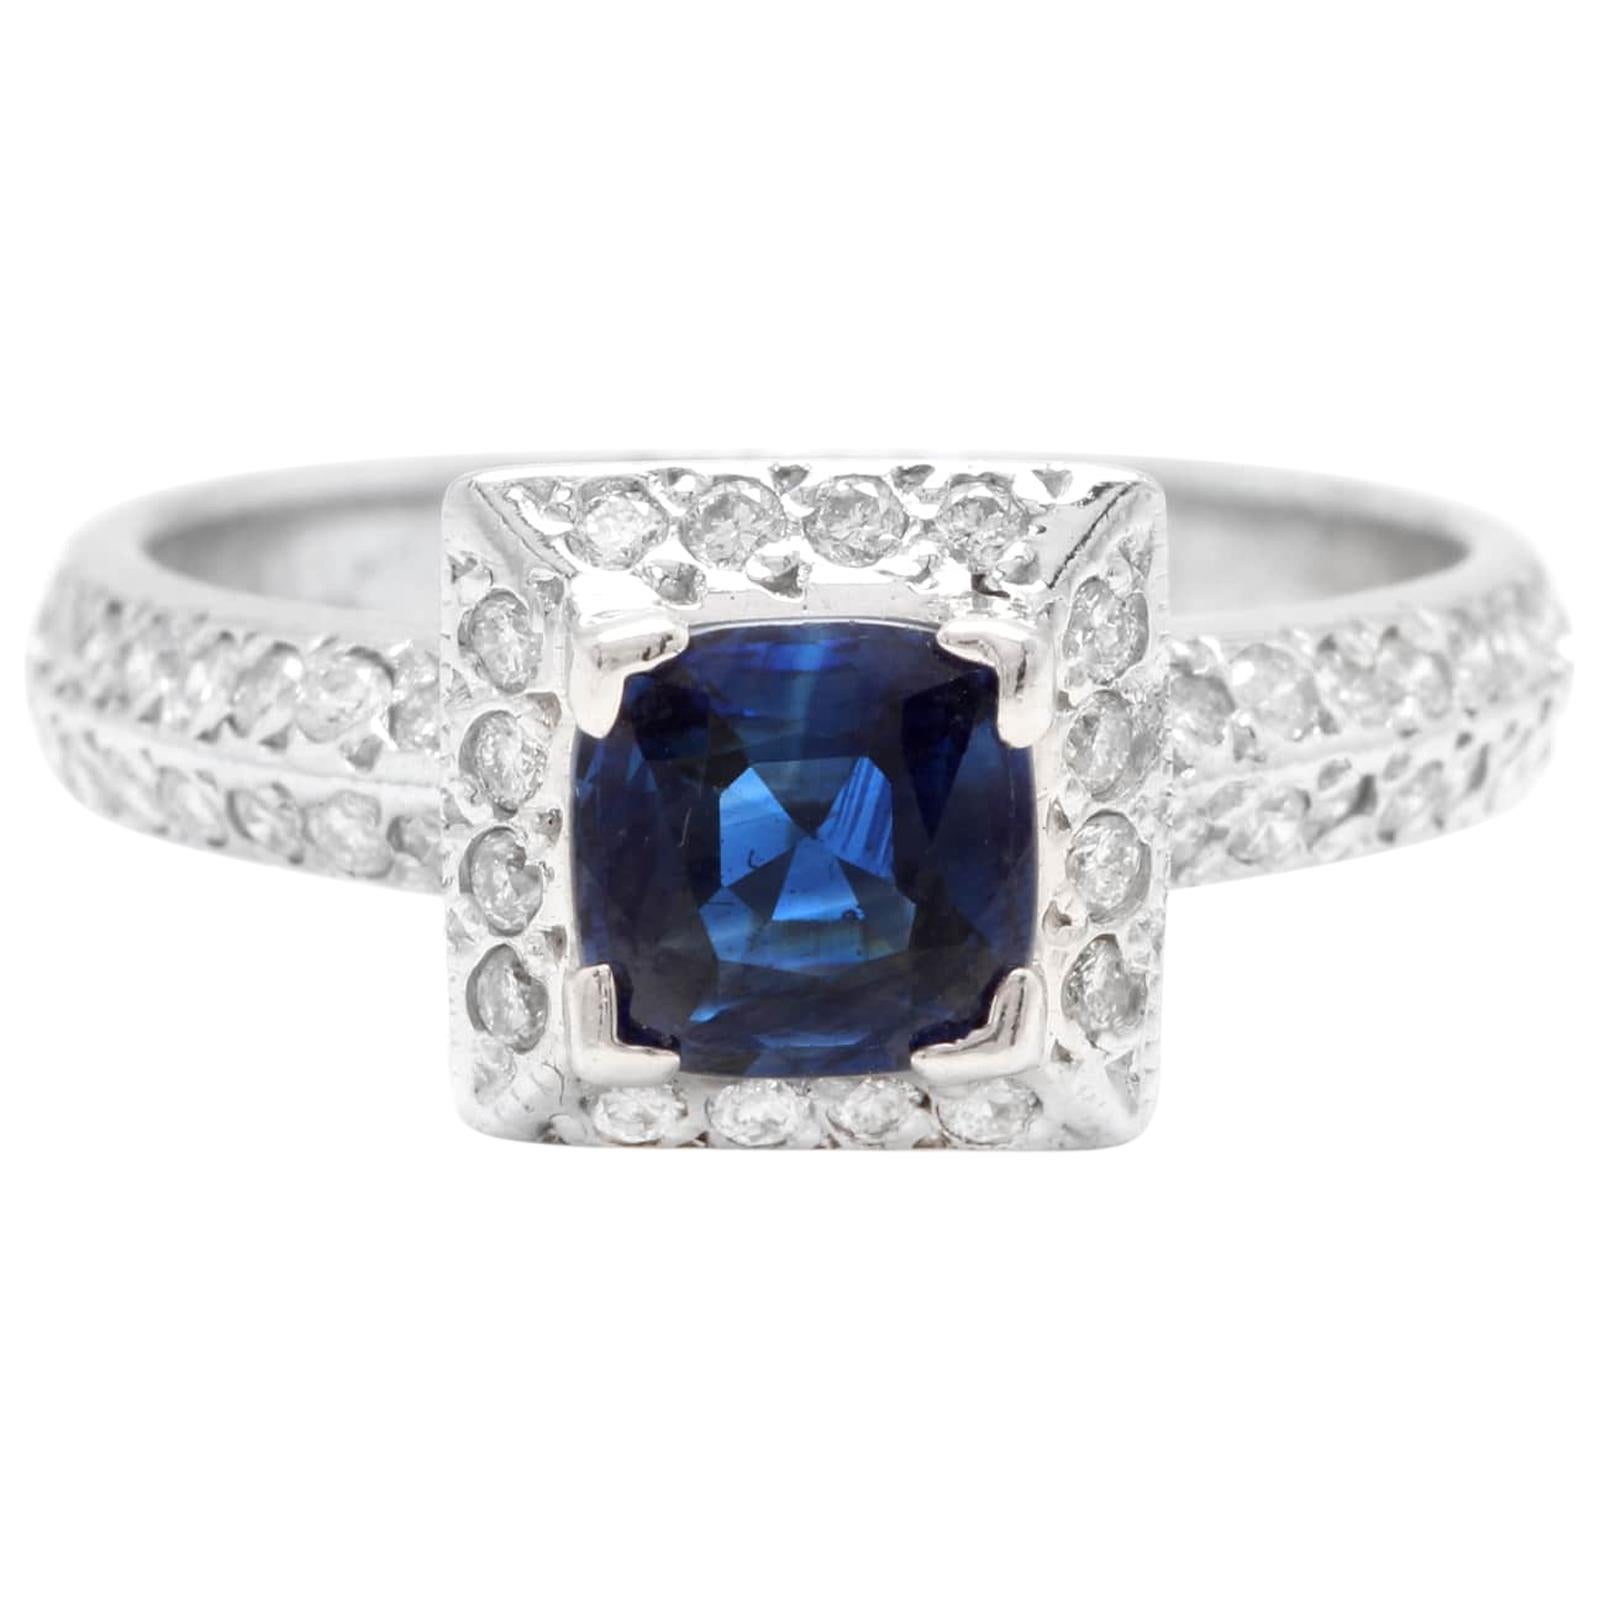 Magnifique saphir bleu naturel de Ceylan de 1,50 carat et diamant blanc massif de 14 carats